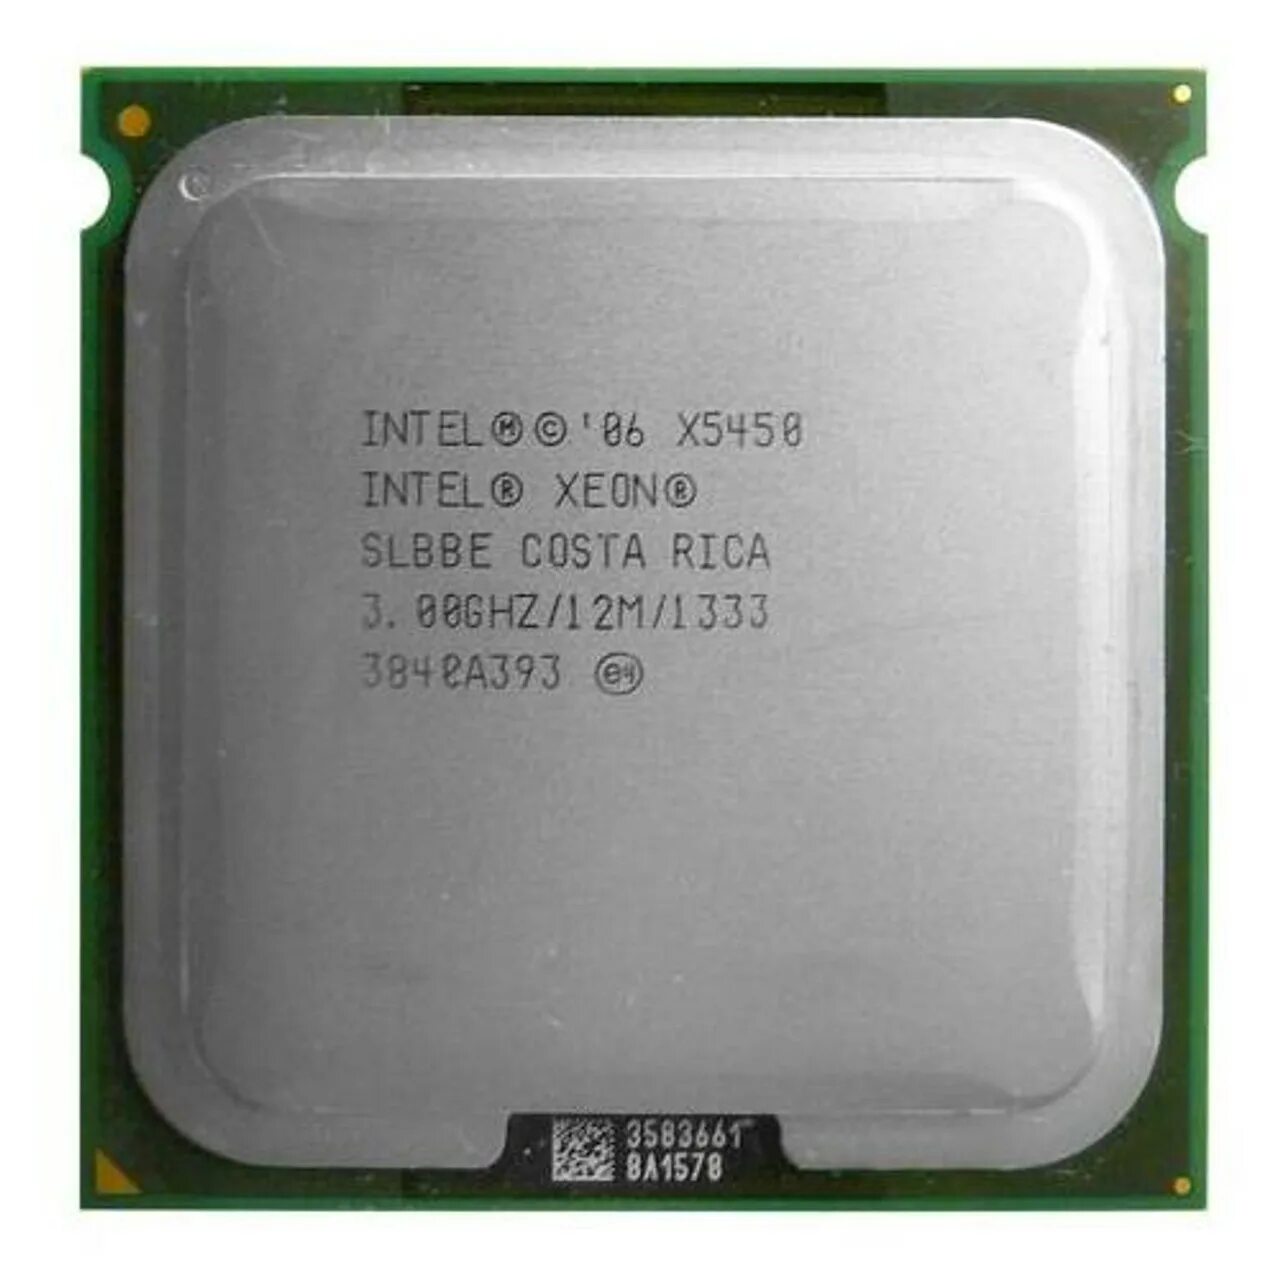 Xeon x5450 CPU Z. Xeon 5160. Xeon x5690. 5450-3ba00. Intel xeon x5450